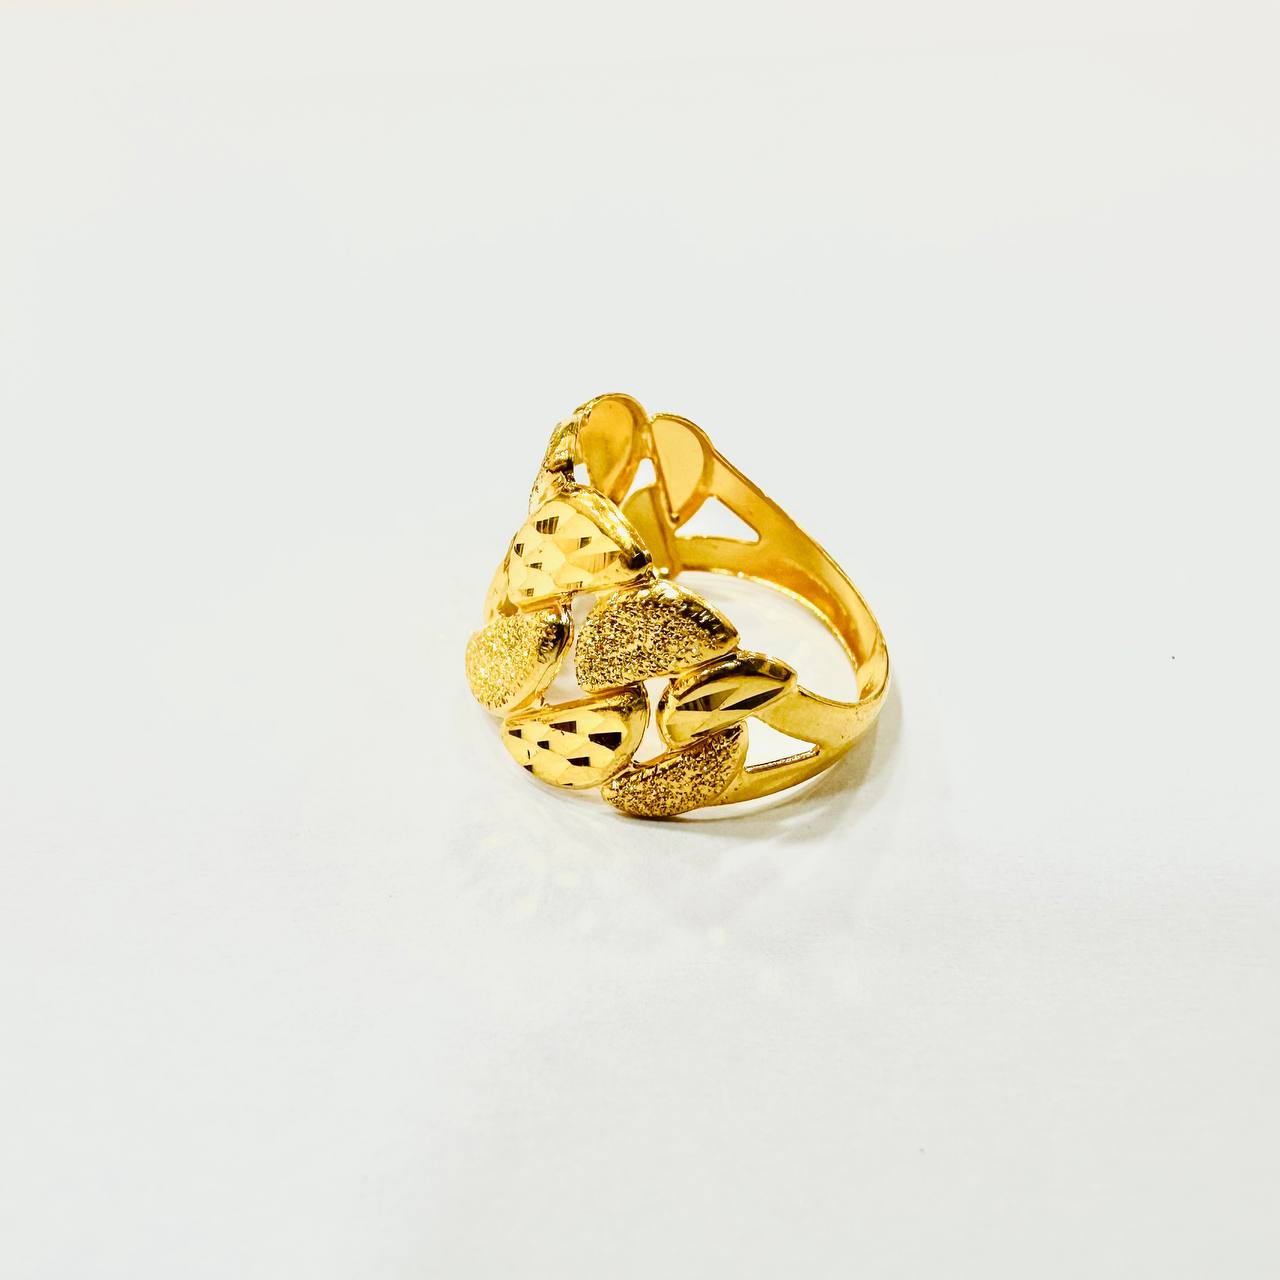 22K / 916 Gold Wide Milo Ring-916 gold-Best Gold Shop